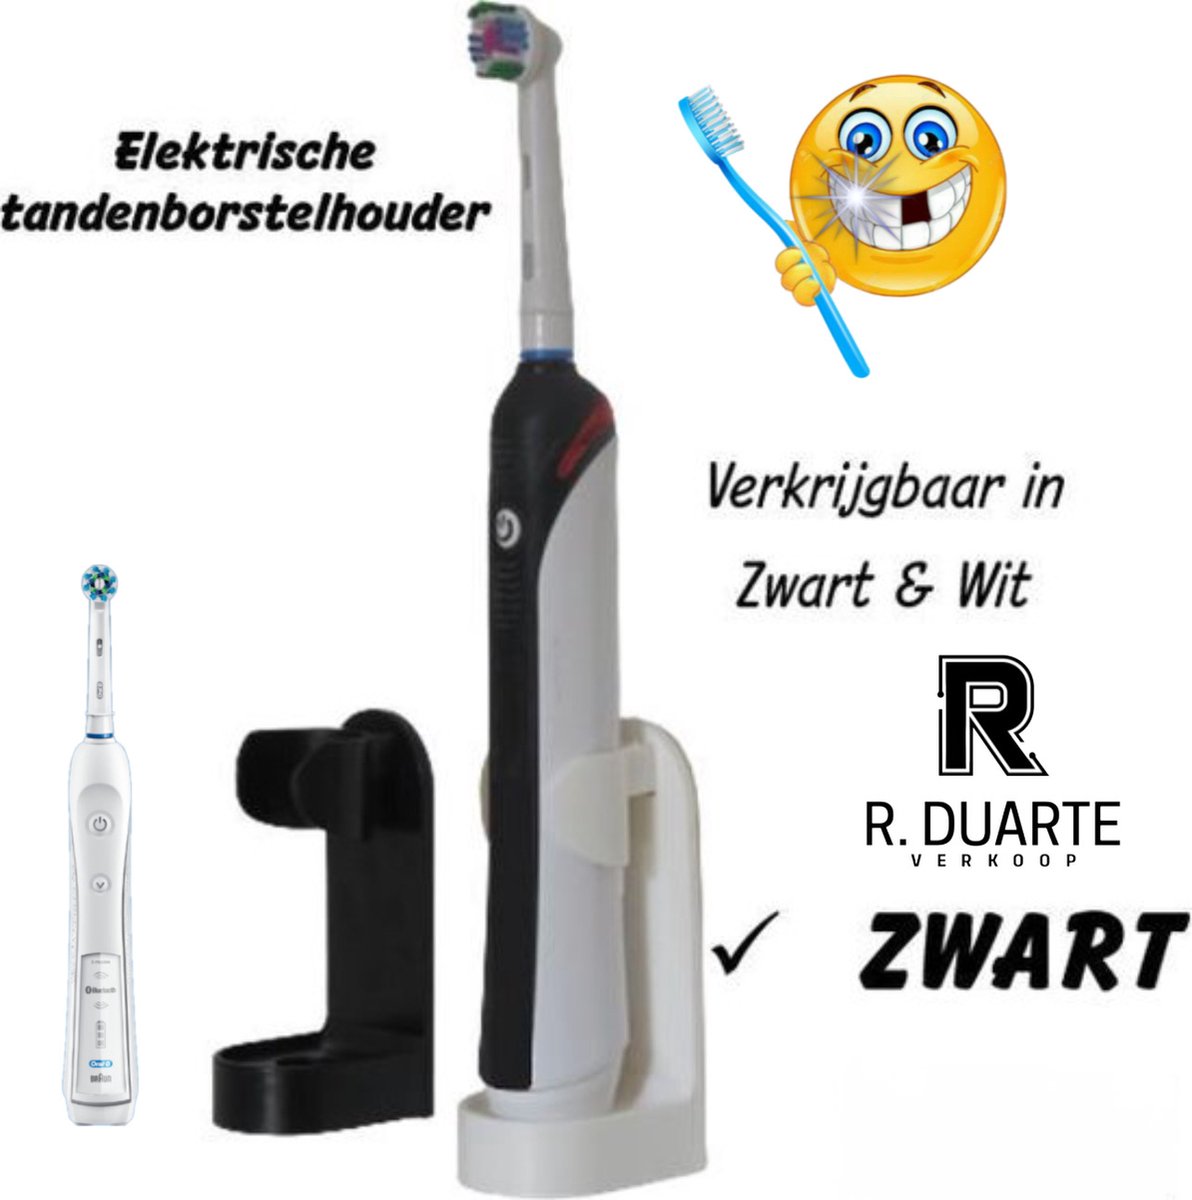 kwalitatieve Elektrische tandenborstelhouders ZWART 1 stuk zonder boren geschikt voor Oral B Toothbrush Zelfklevend hangende houder voor elektrische tandenborstels tandenborstelhouder- standaard accessoire